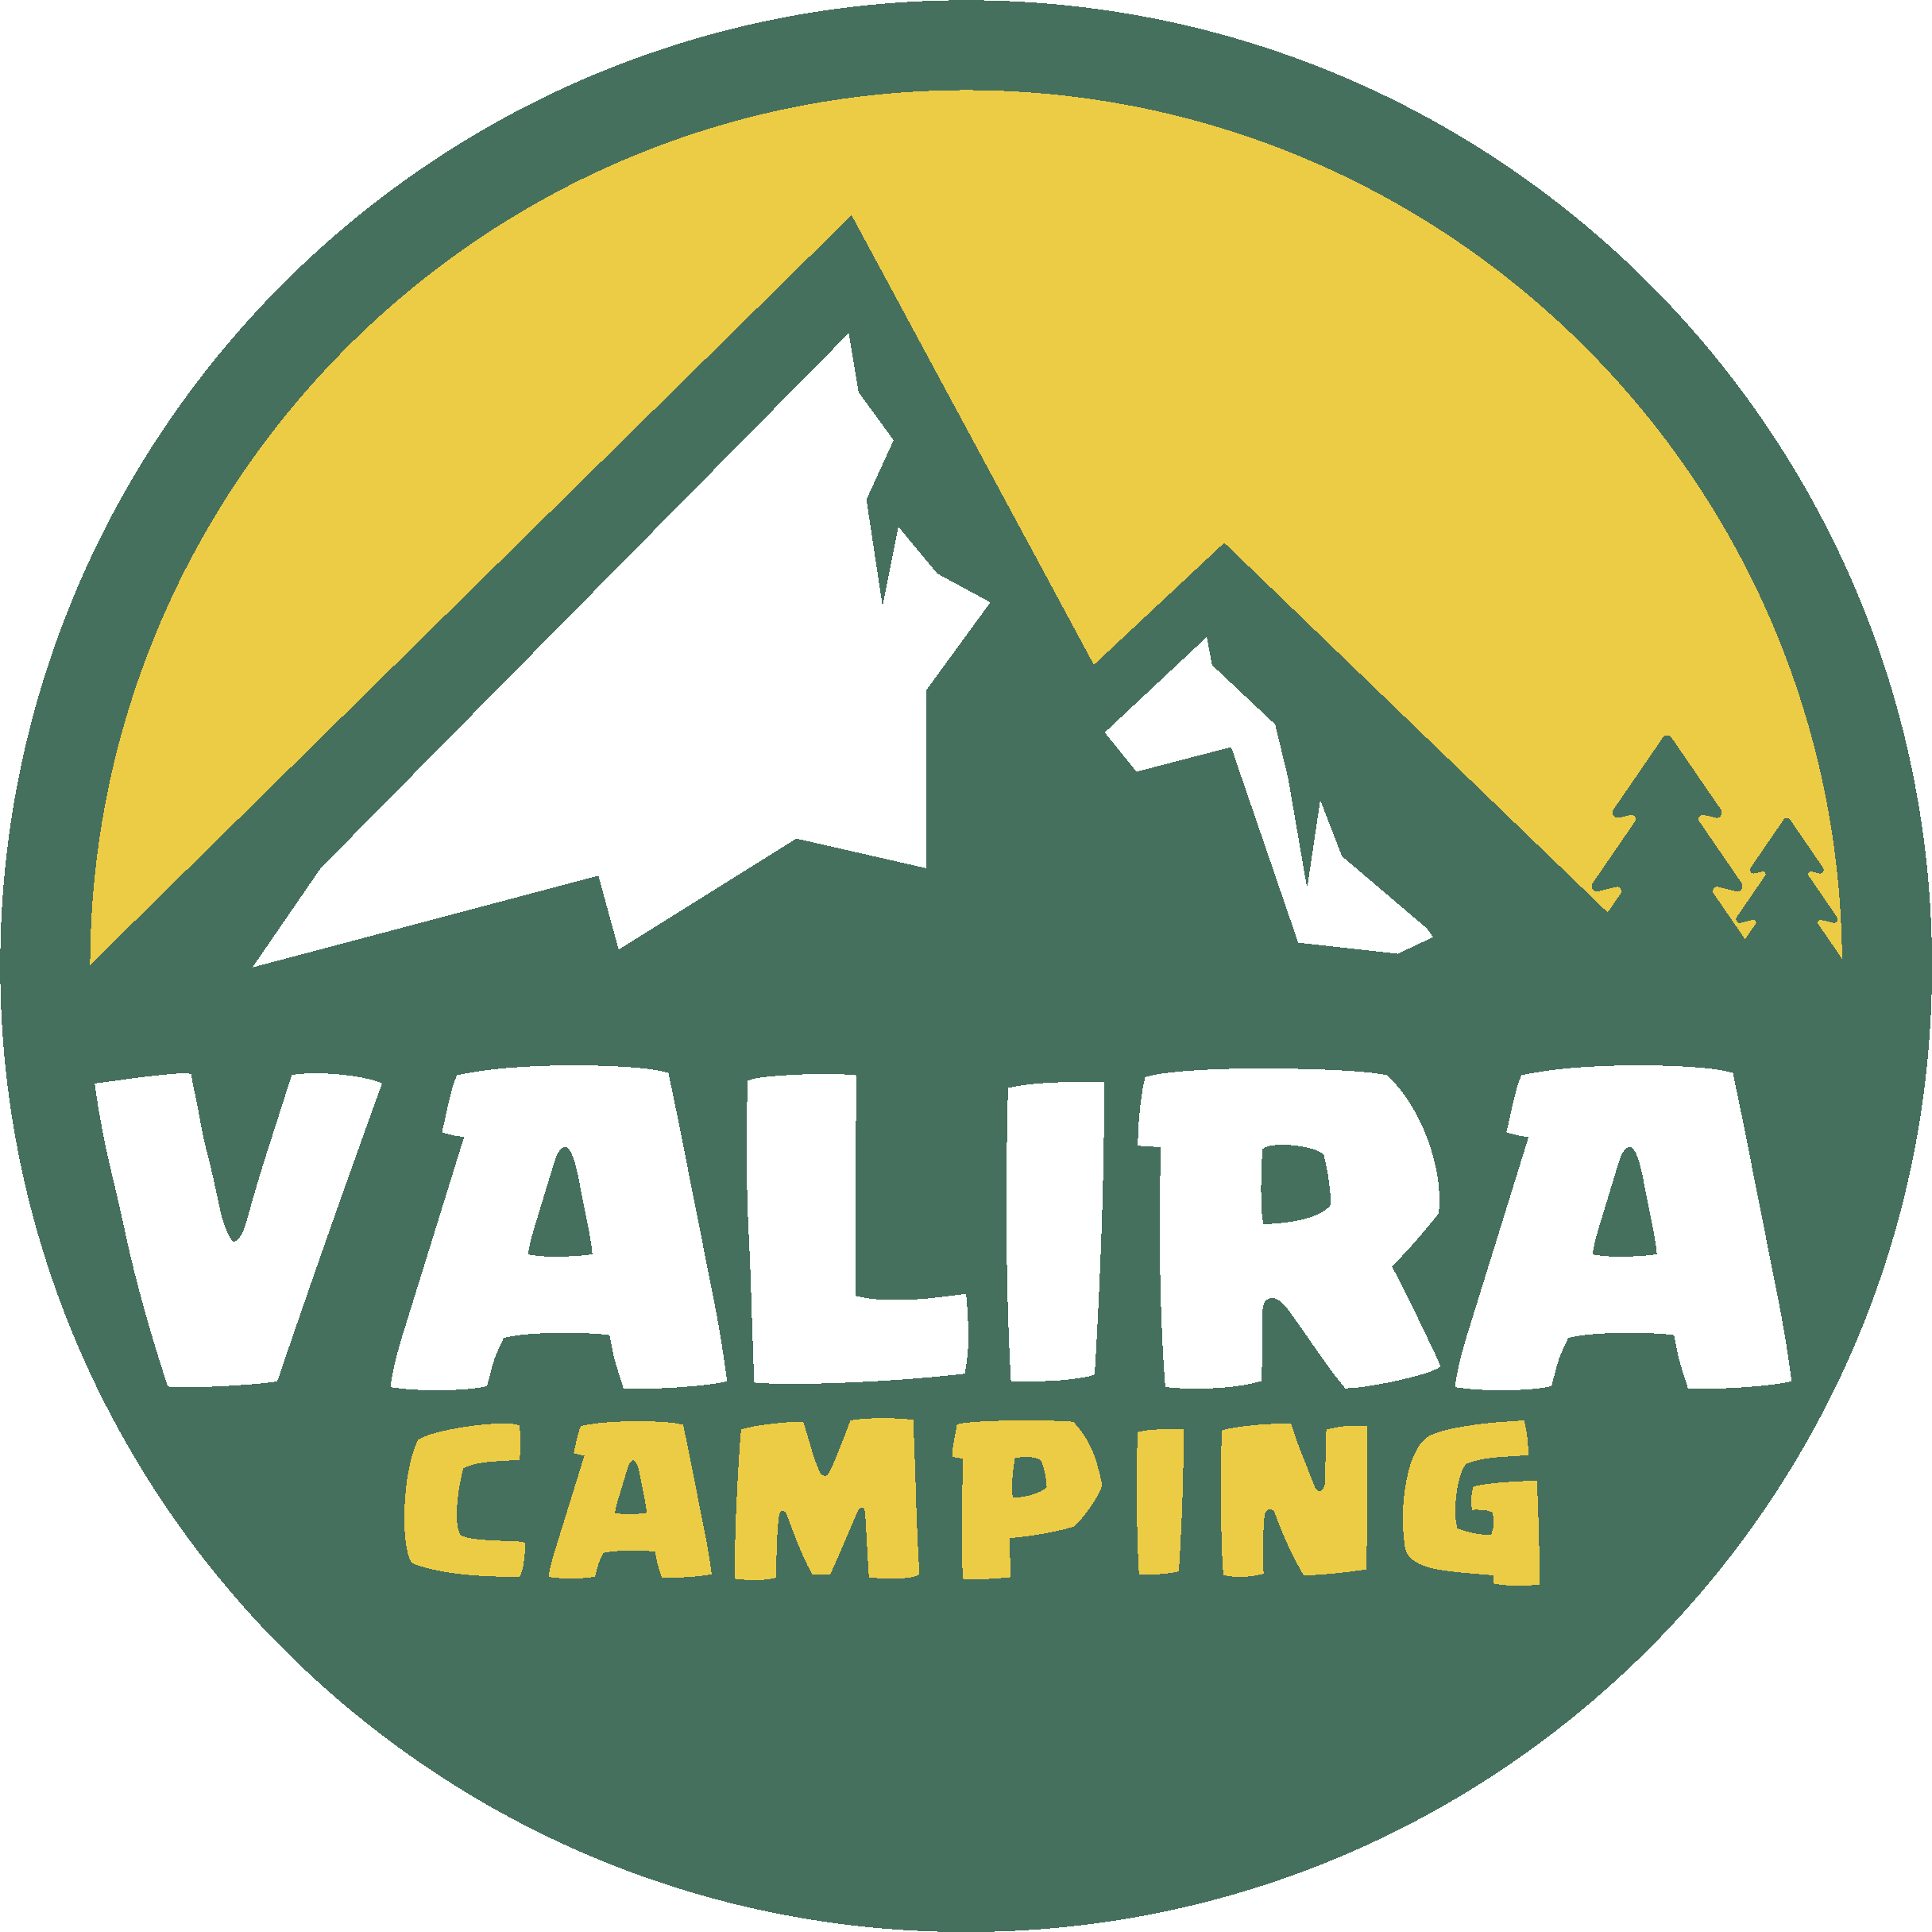 Camping Valira logo